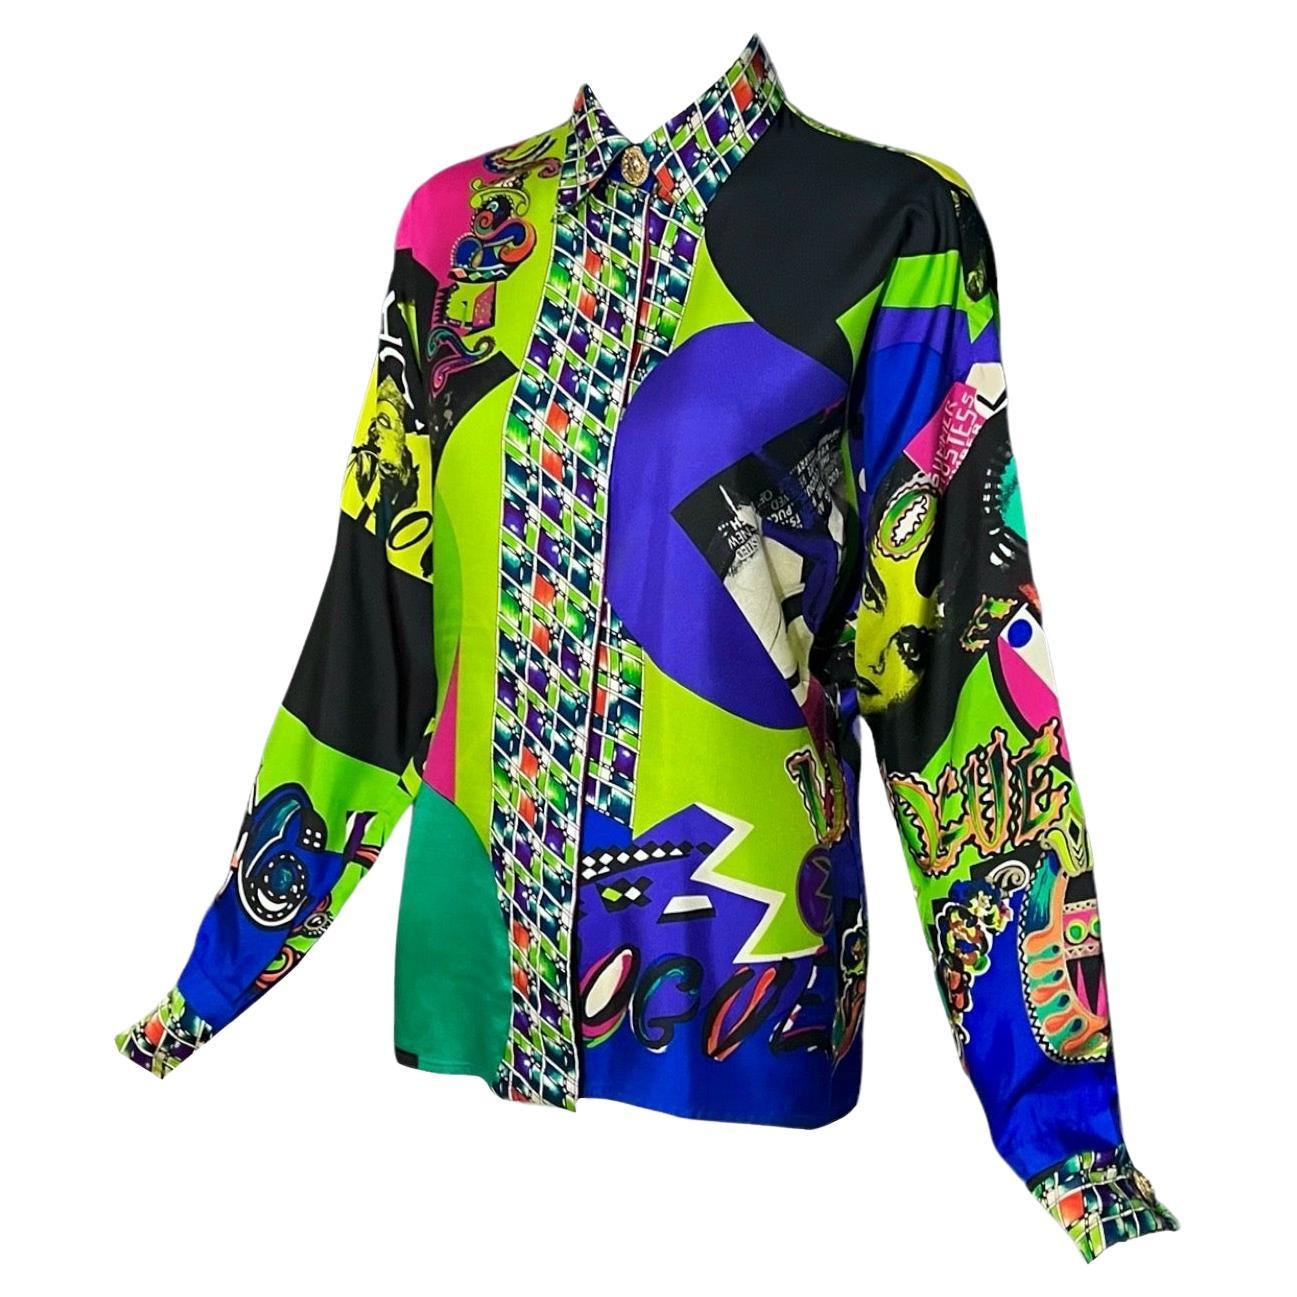 Gianni Versace Vogue Vintage mehrfarbig bedrucktes Pop Art Hemd aus der Frühjahrskollektion 1991.
Mit dem kultigen Vogue-Aufdruck und den Titelseiten der Vogue-Magazine sowie den abstrakten Buchstaben 